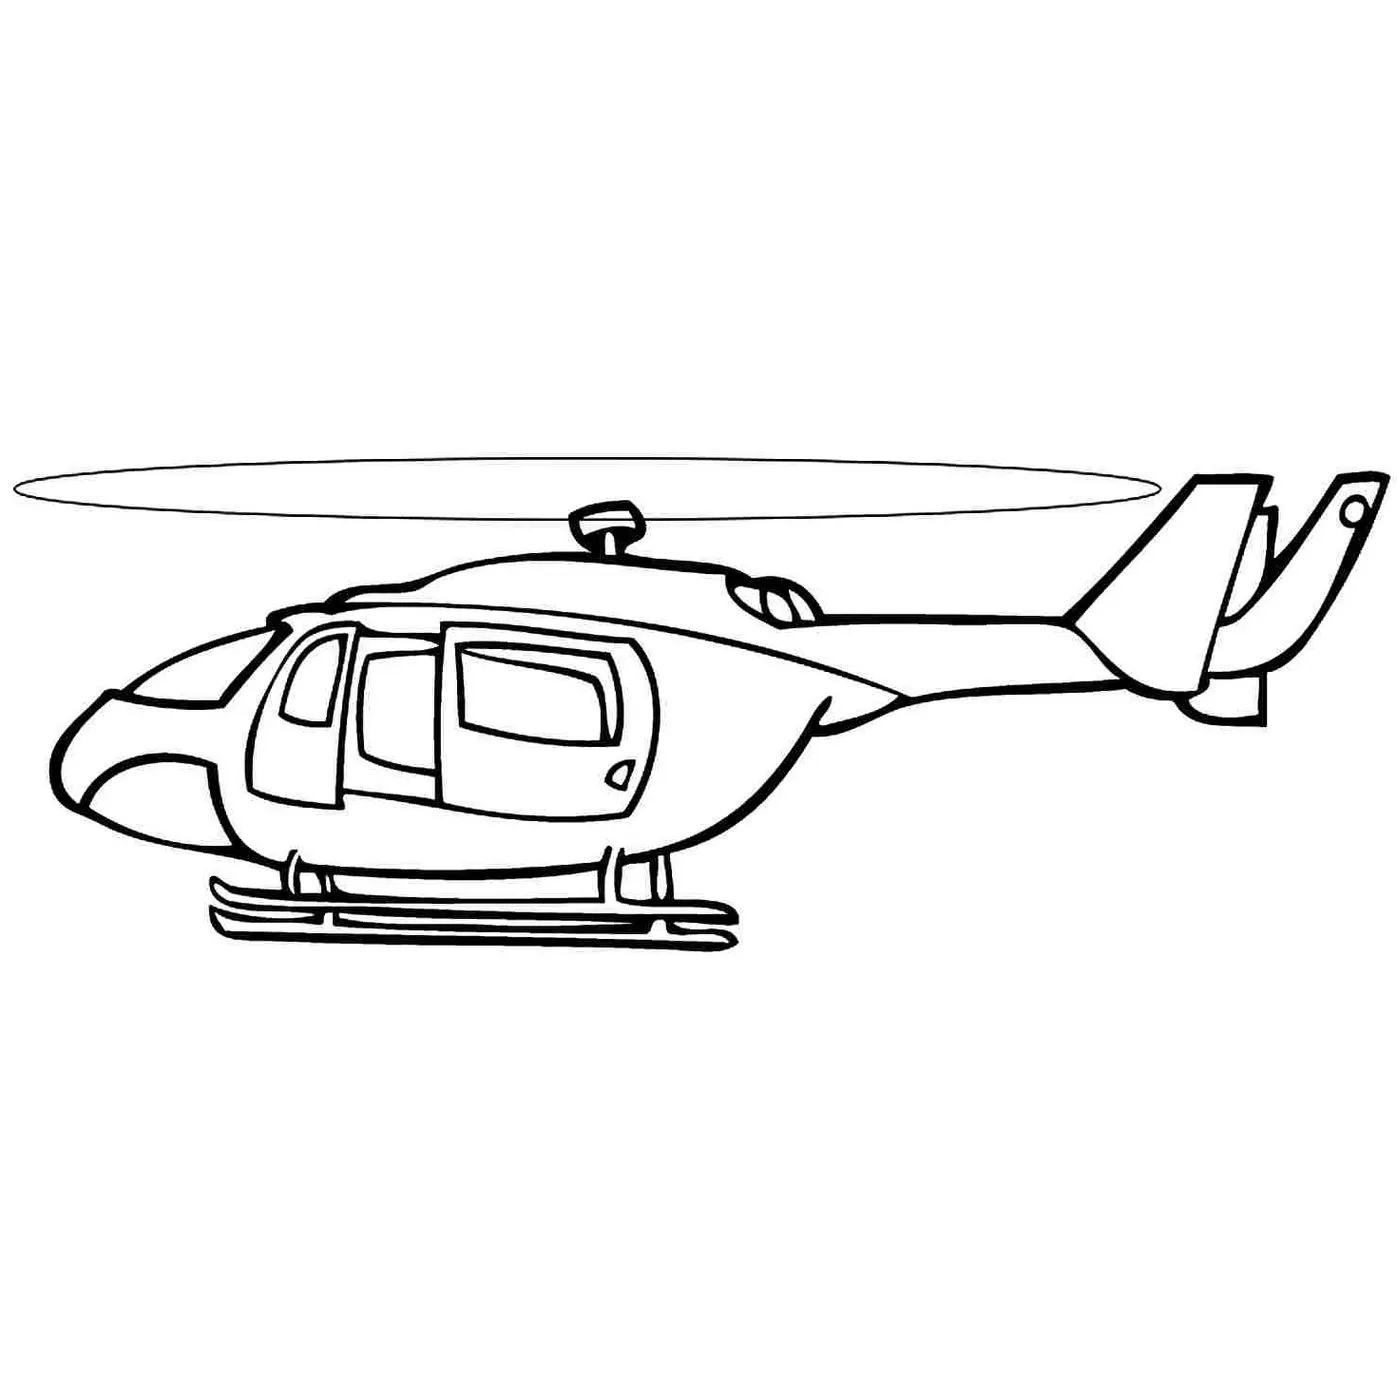 Helicóptero para pintar